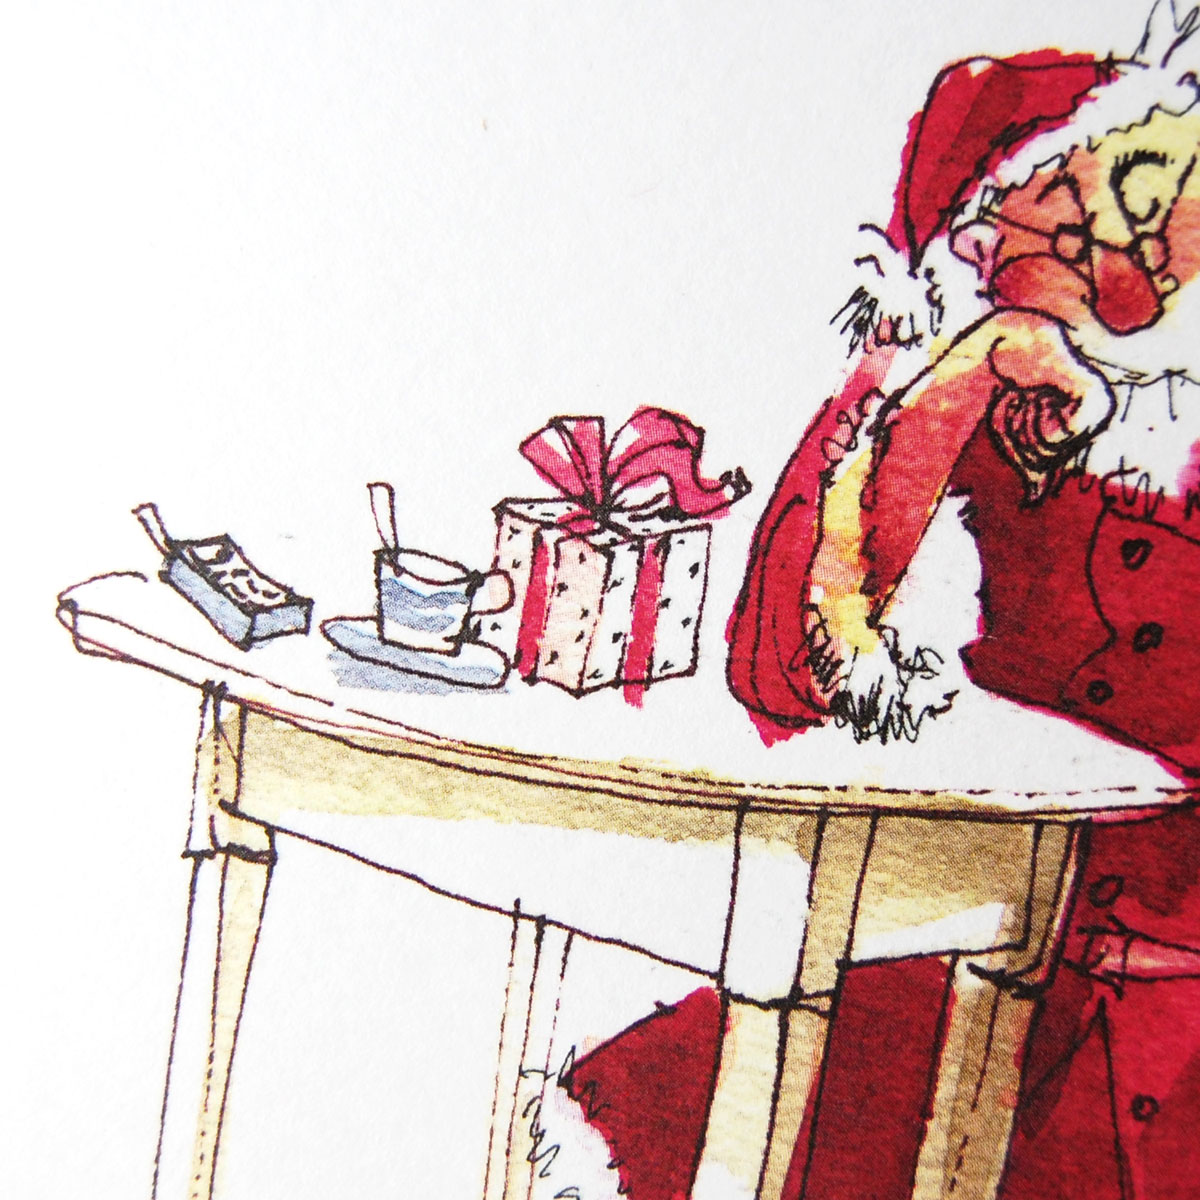 Der Weihnachtsmann erholt sich, illustrierte Weihnachtsgrüße